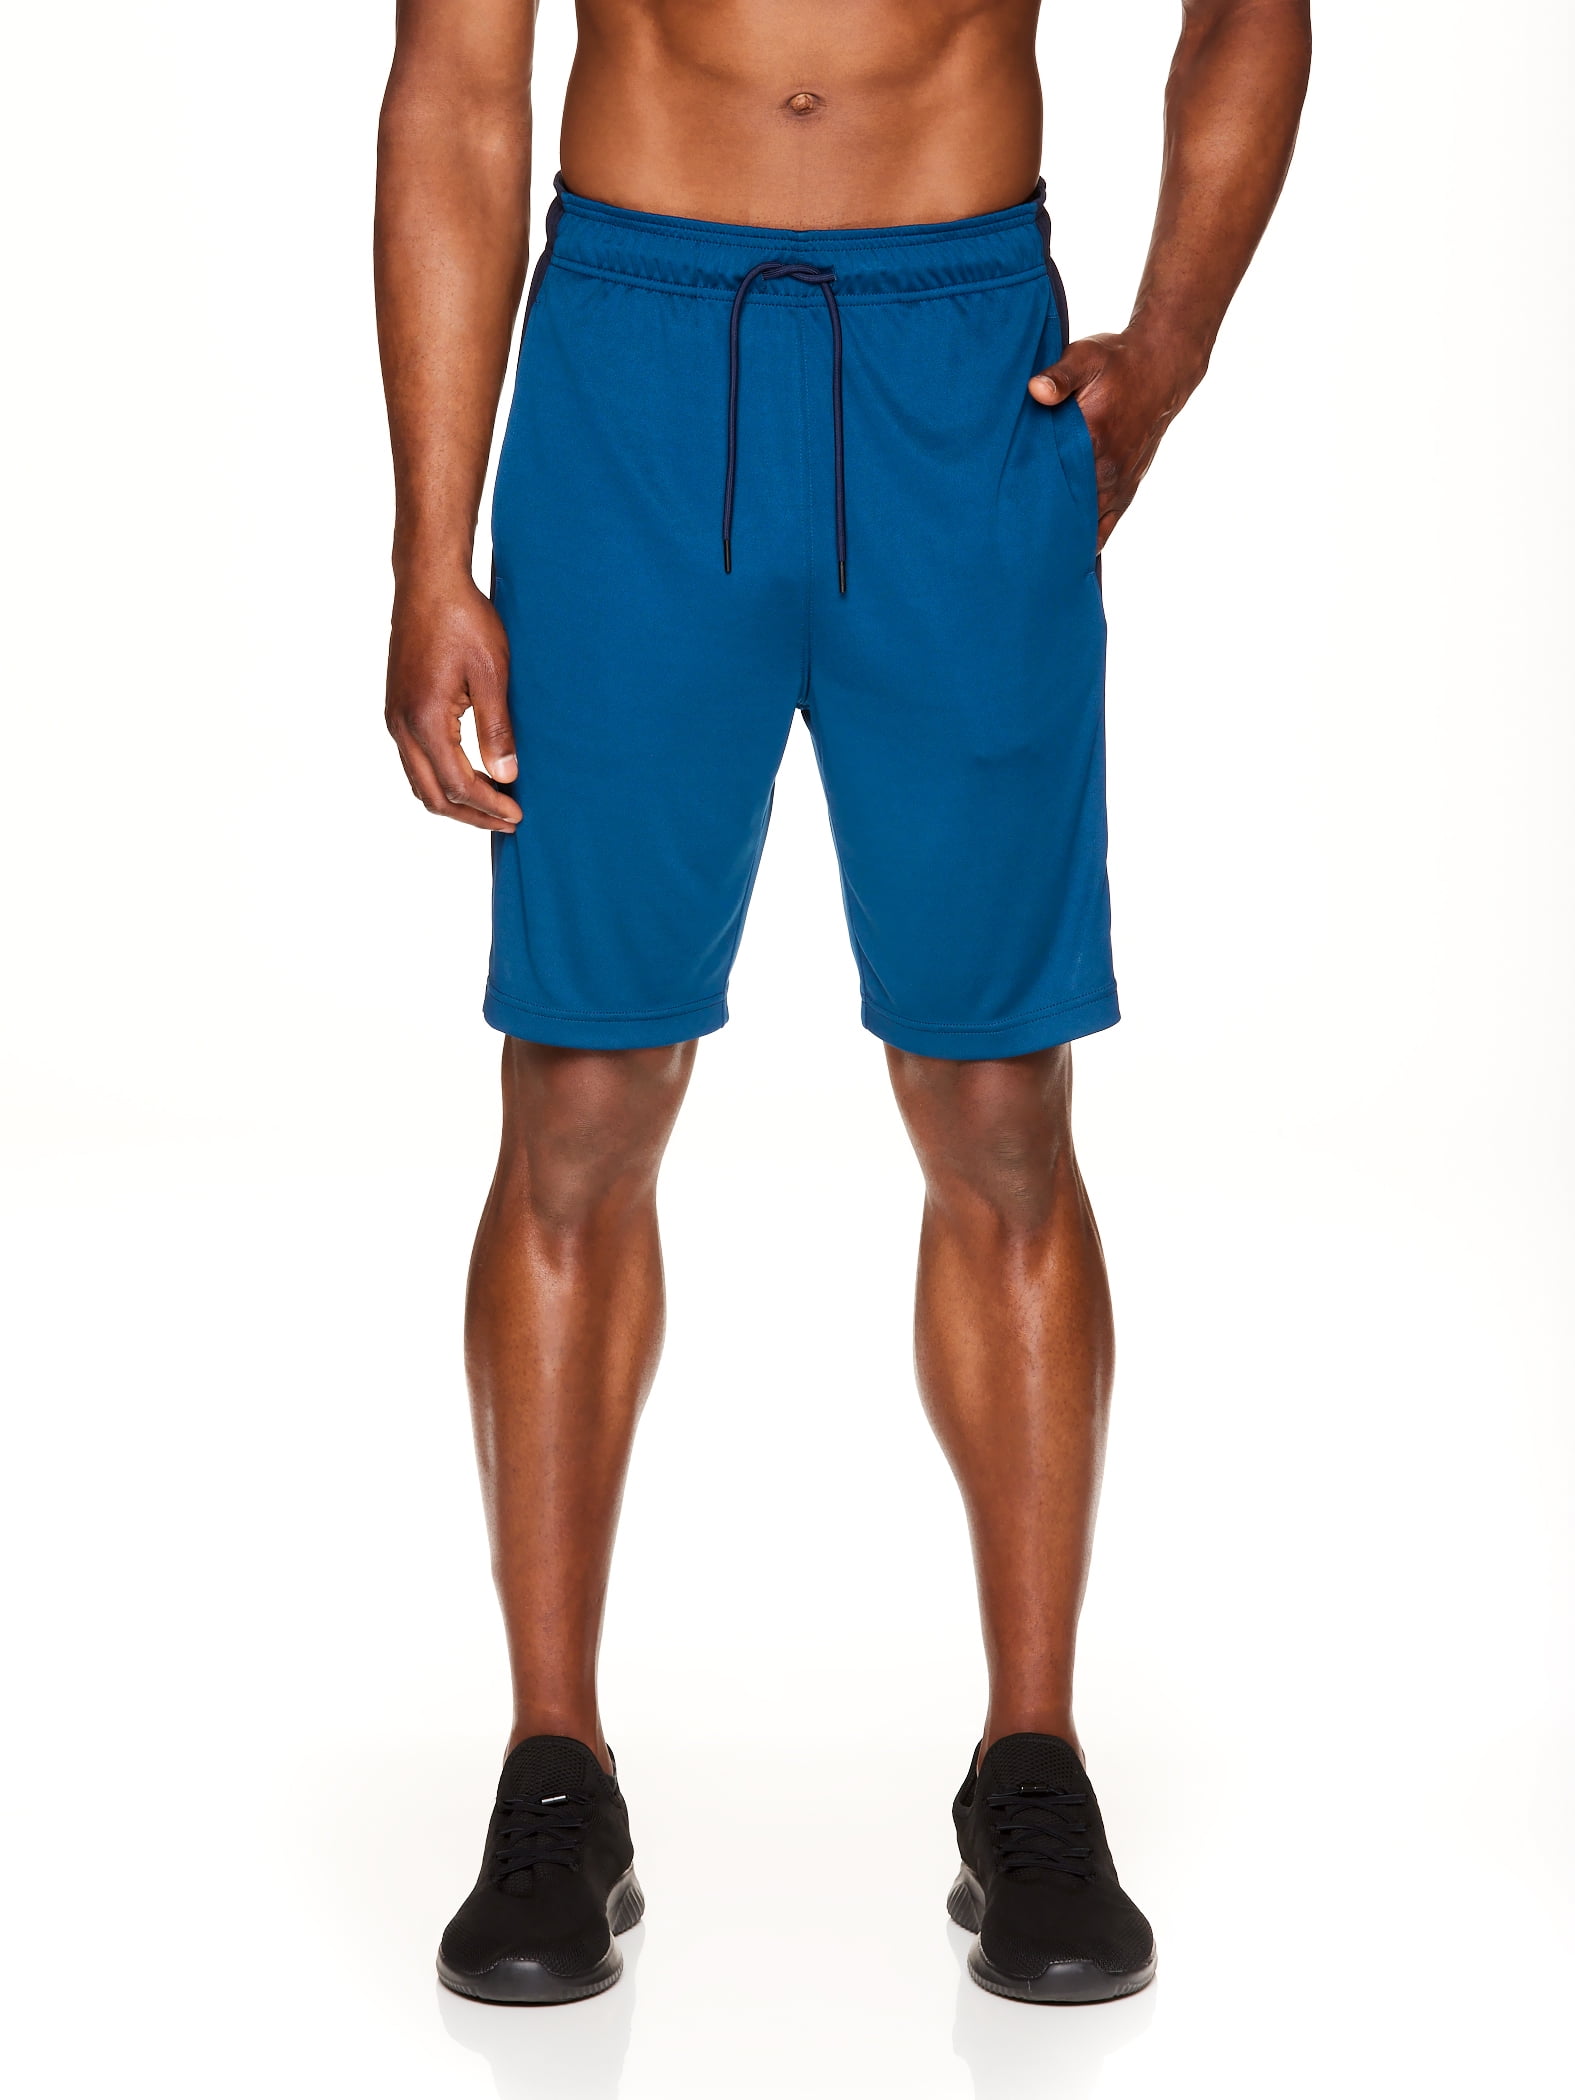 Reebok Men's and Big Men's Active Knit Amped Training Shorts - Walmart.com